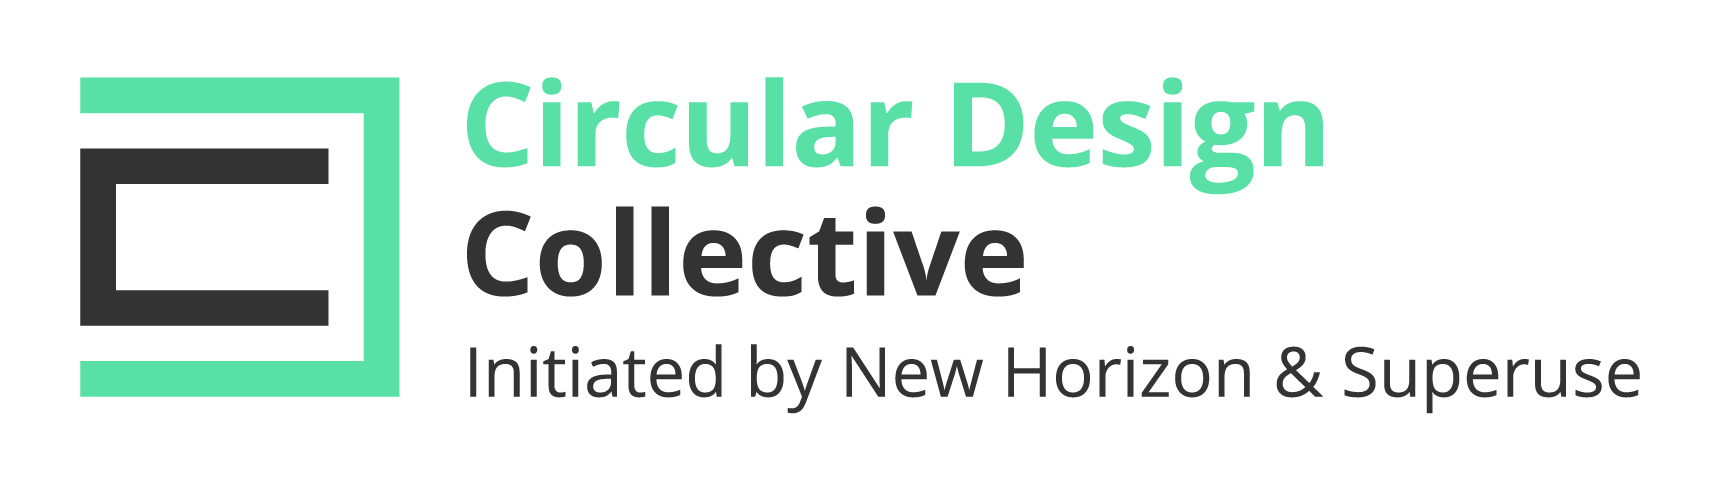 Circular Design Collective